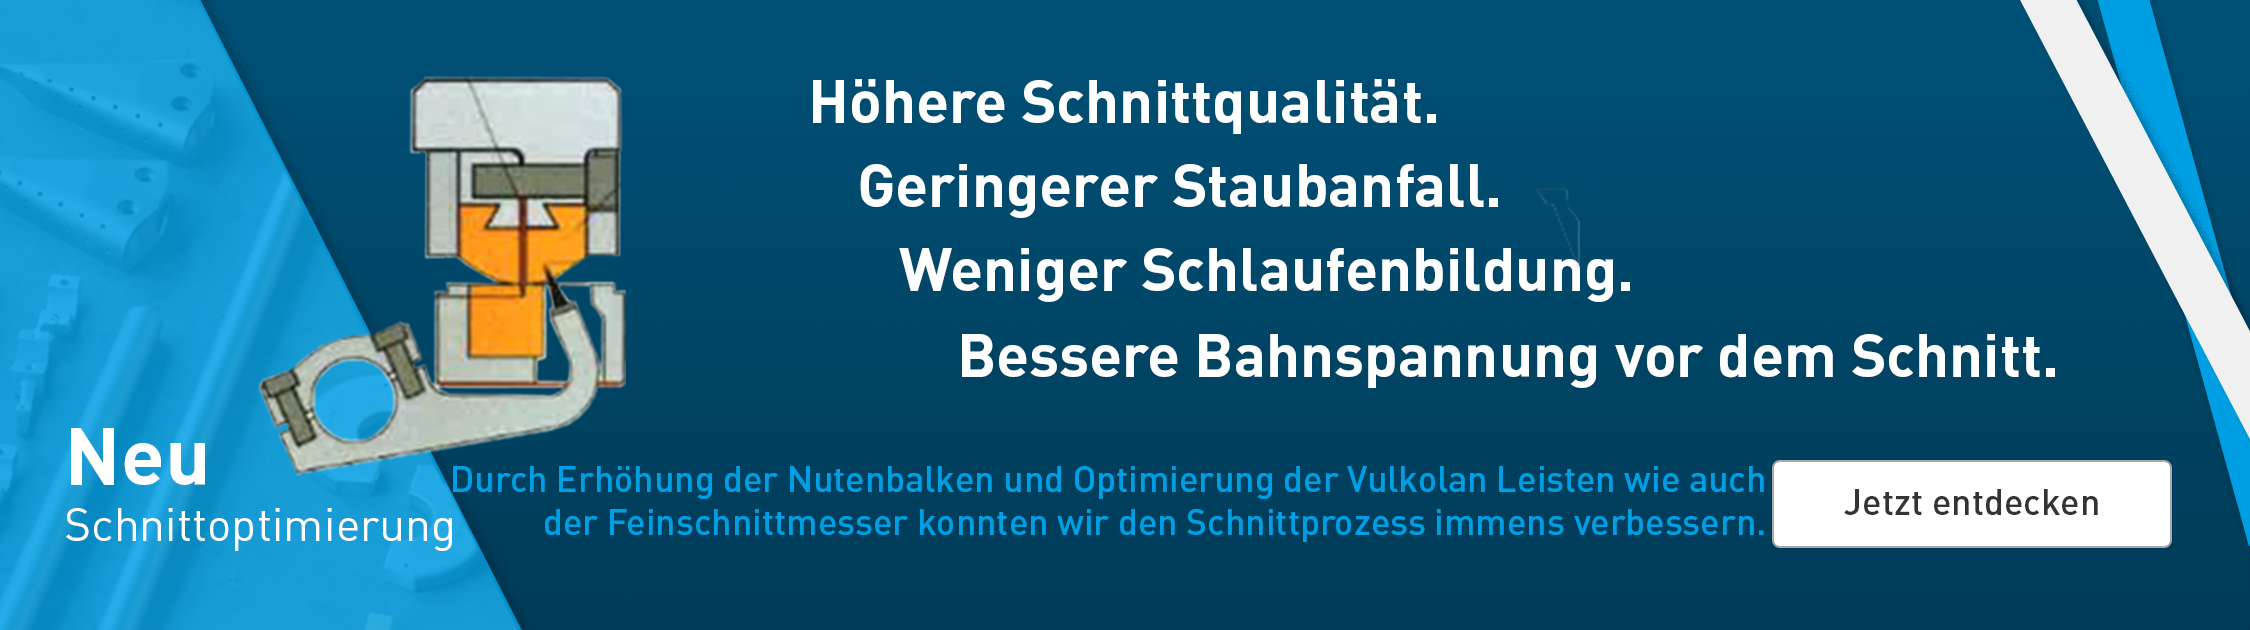 Banner_Schnittoptimierung_DE